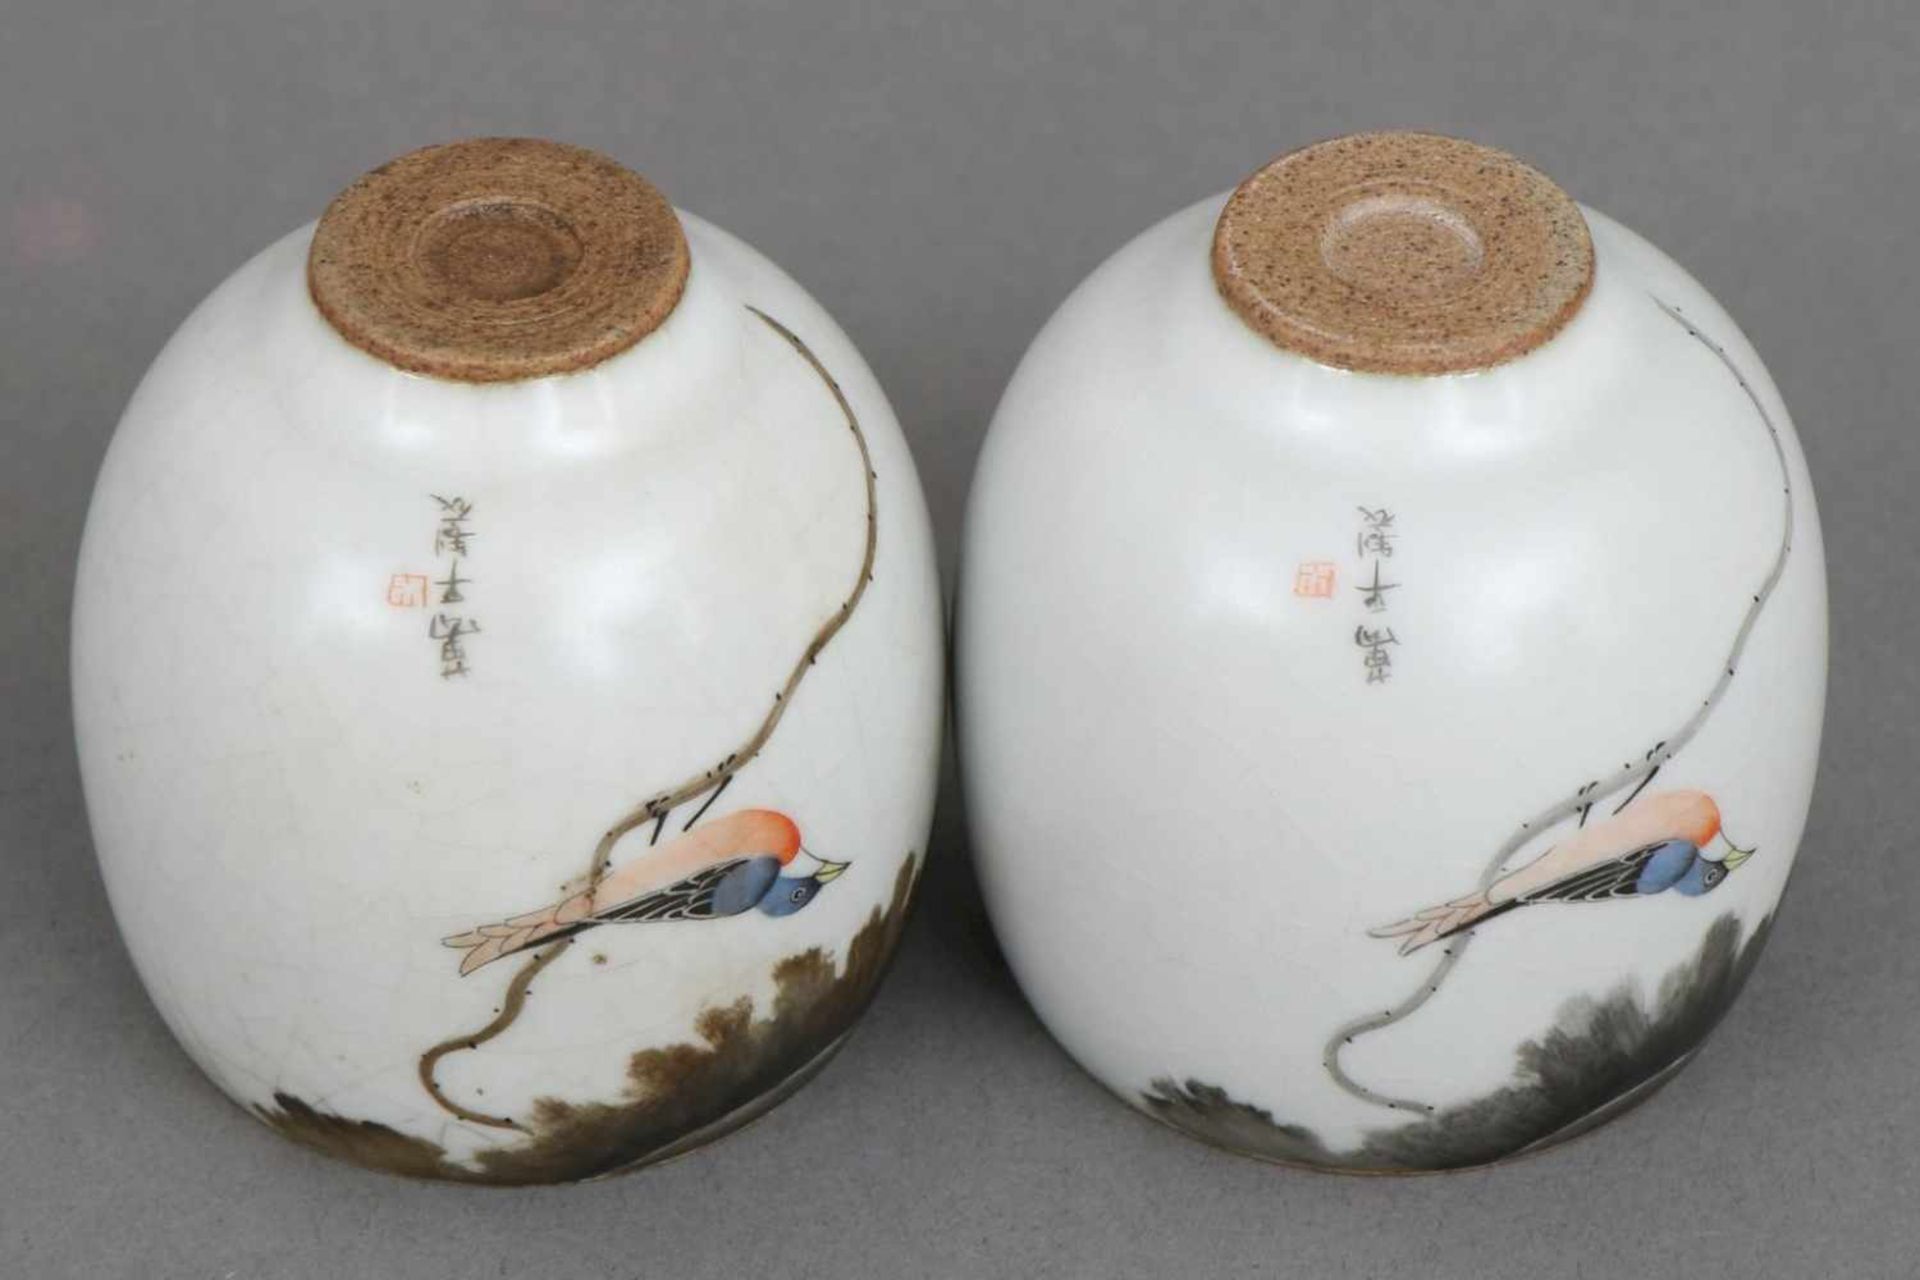 Paar asiatische Koppchen, Porzellanovoide Form auf kleinem Stand, hell glasiert, Craquelee, - Bild 2 aus 2